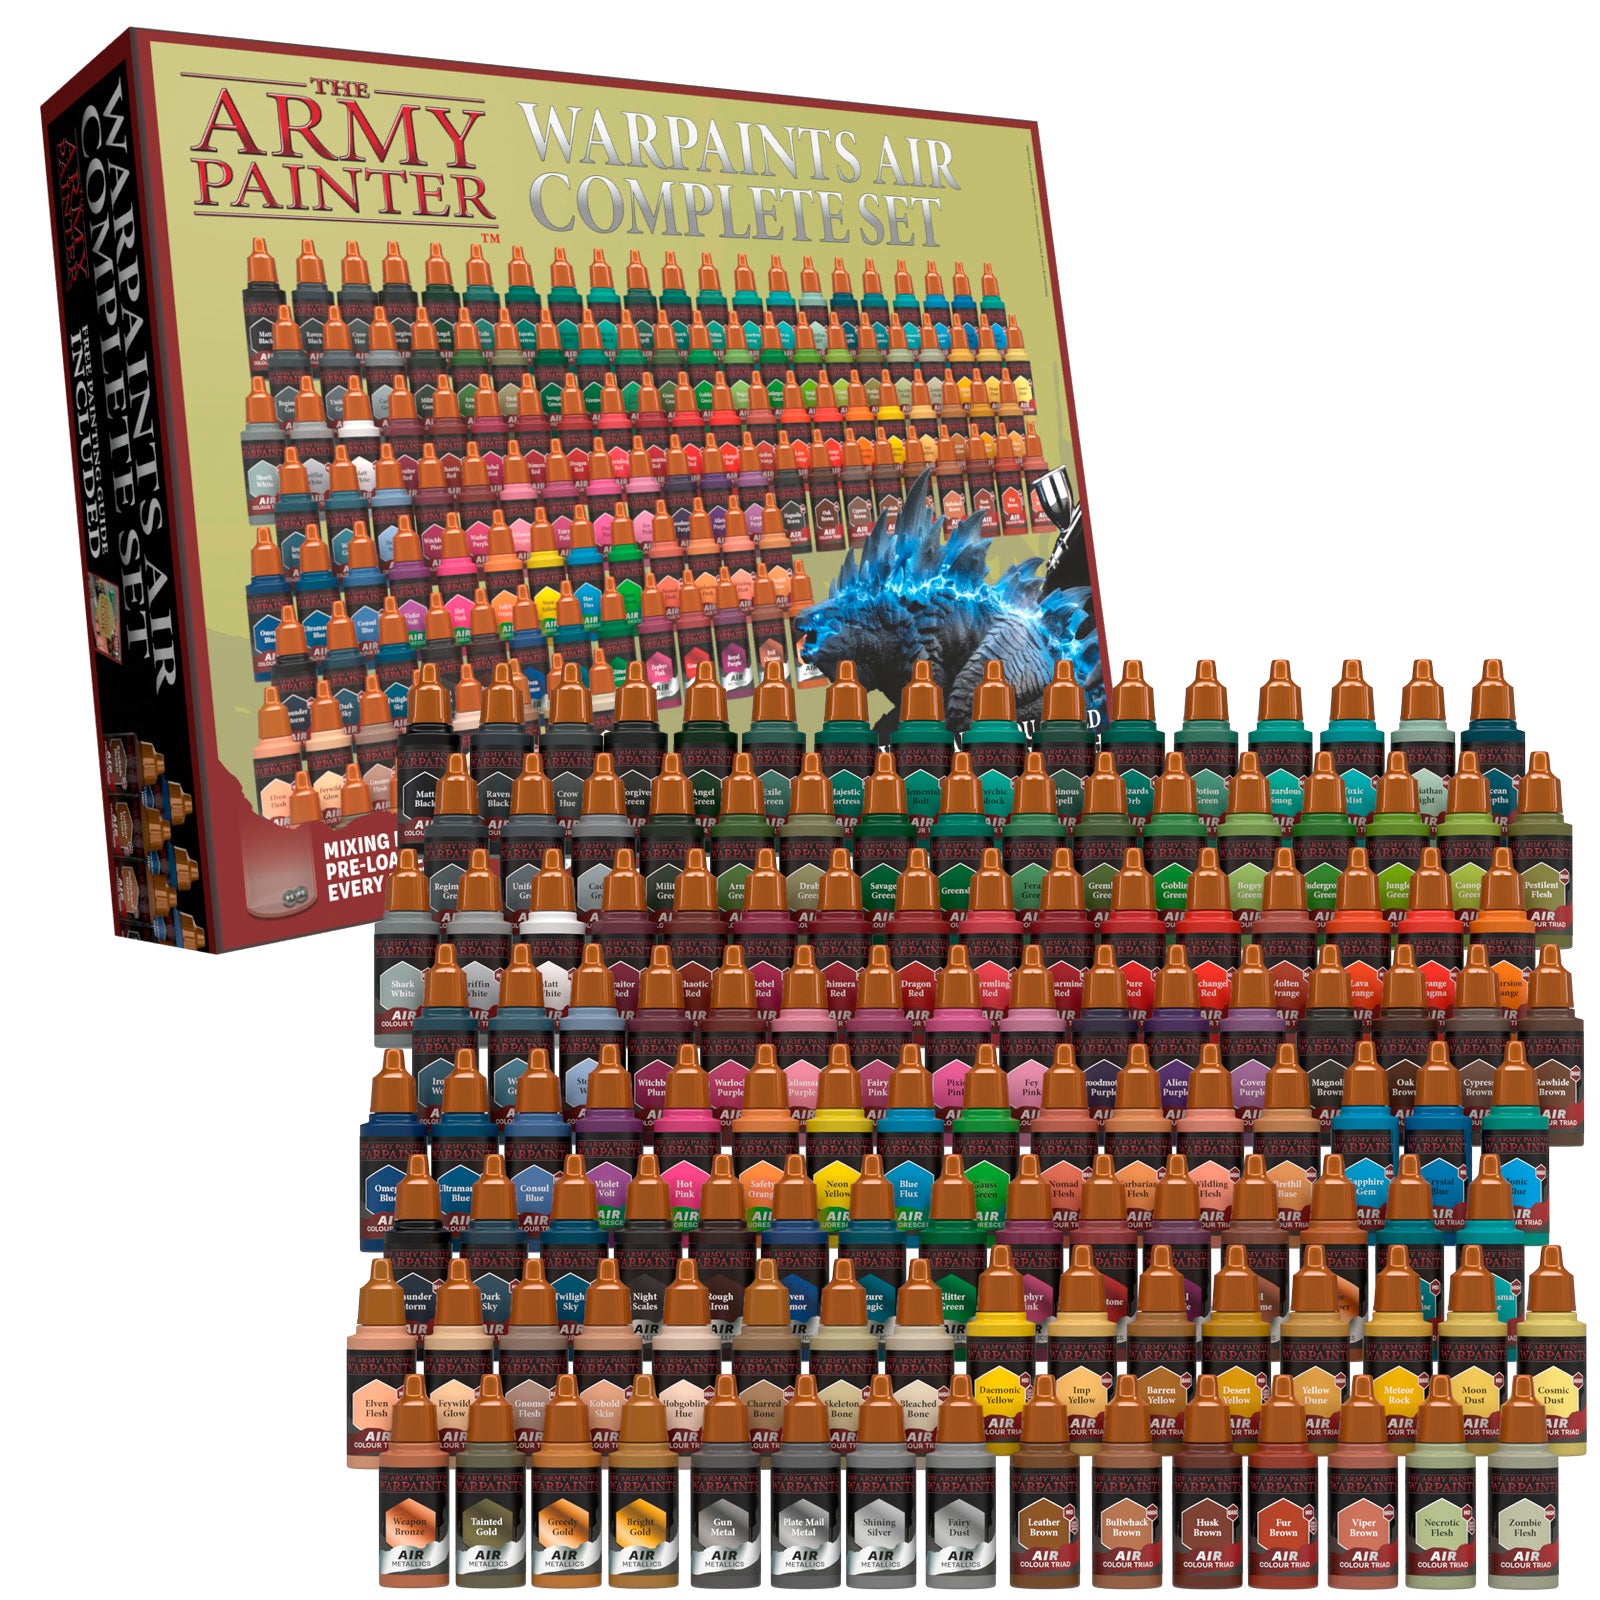 Paint: Army Painter - Warpaints: Skin Tones Paint Set - Tower of Games